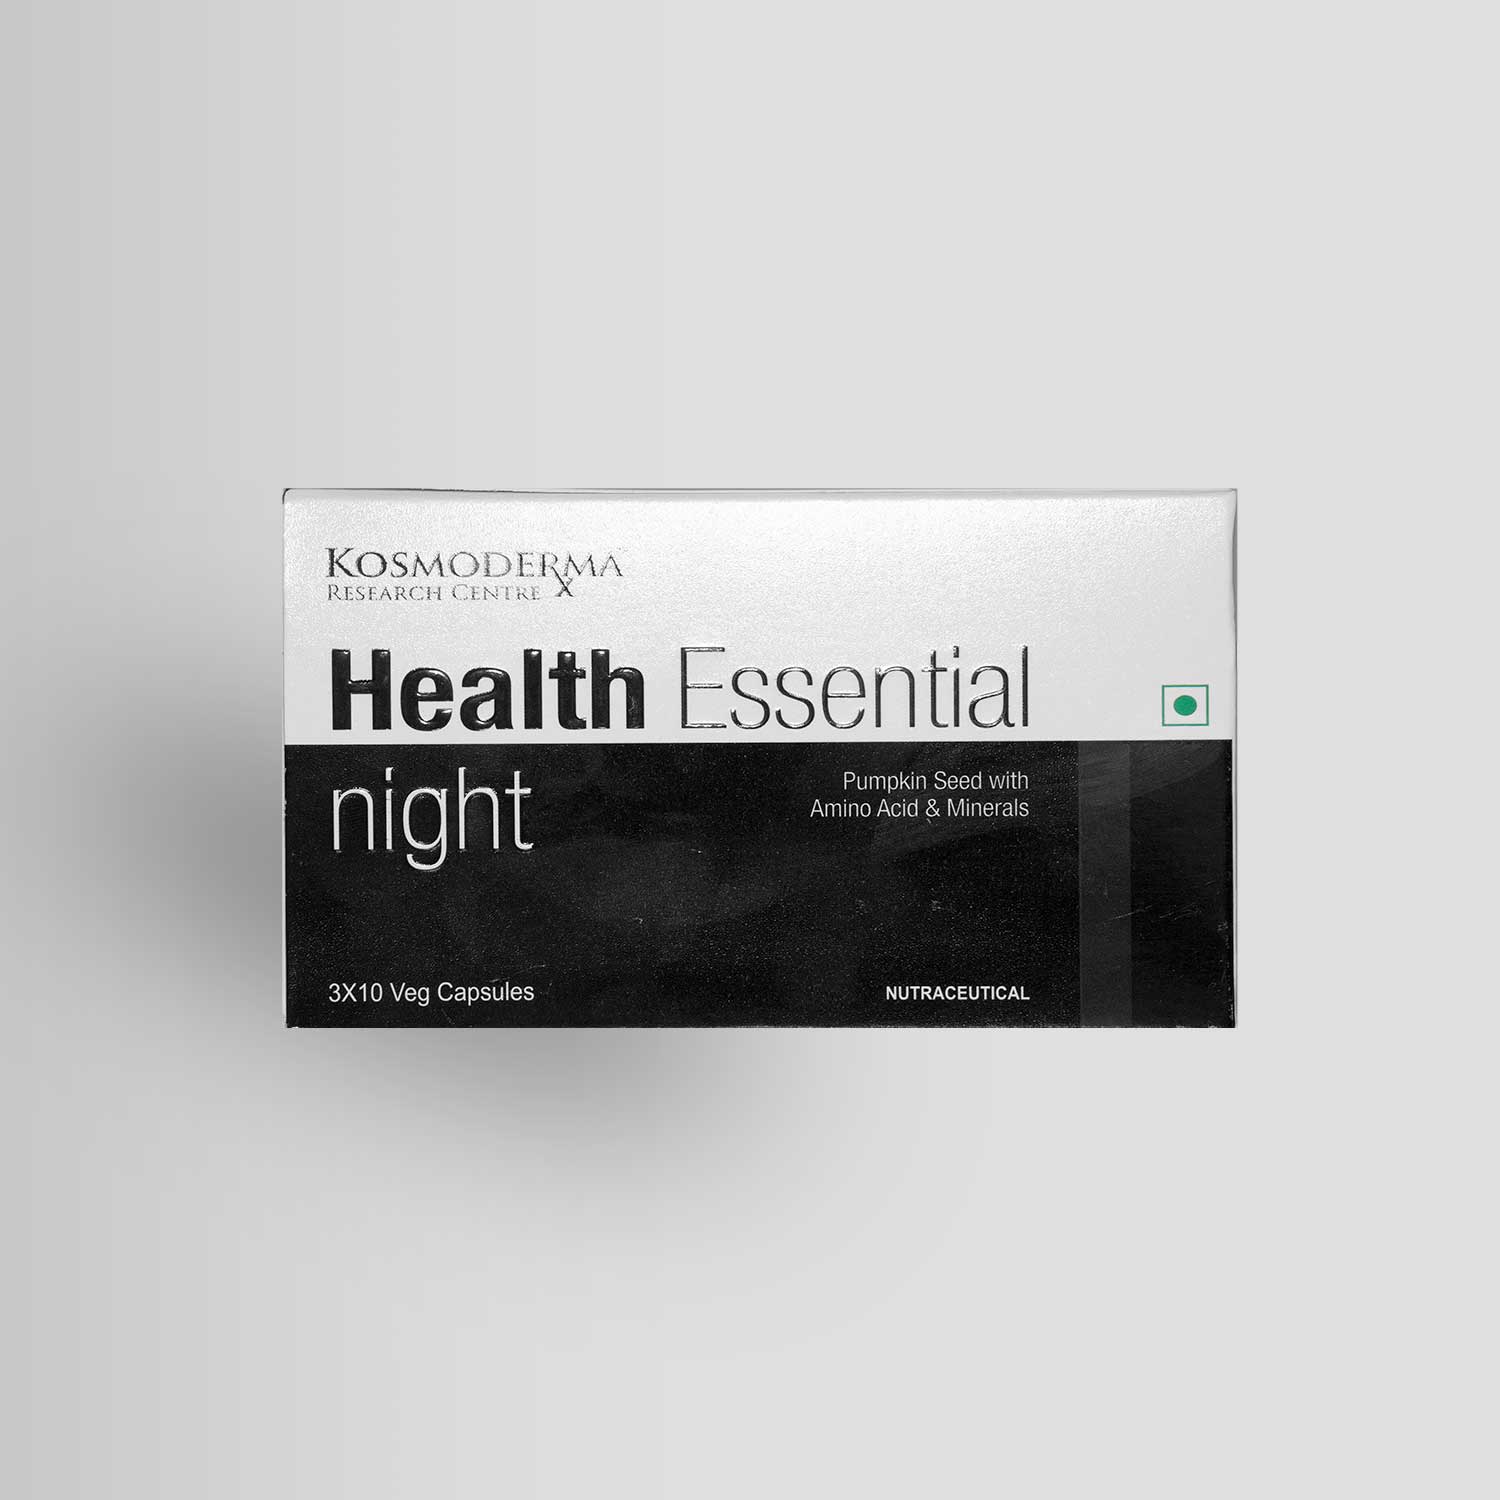 Health Essentials - Kosmoderma